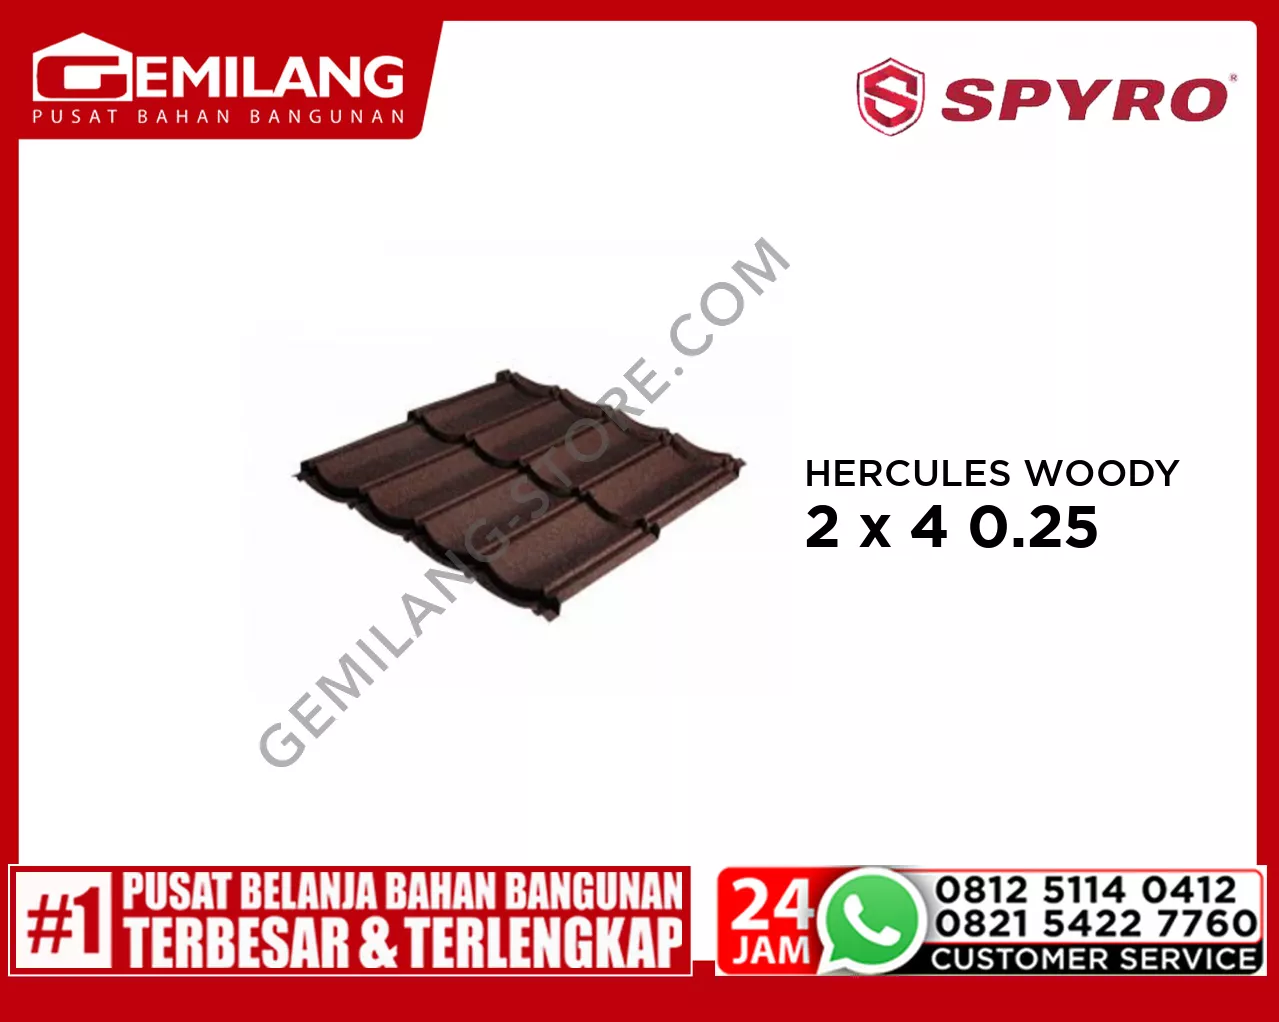 SPYRO HERCULES WOODY BROWN 2 x 4 0.25